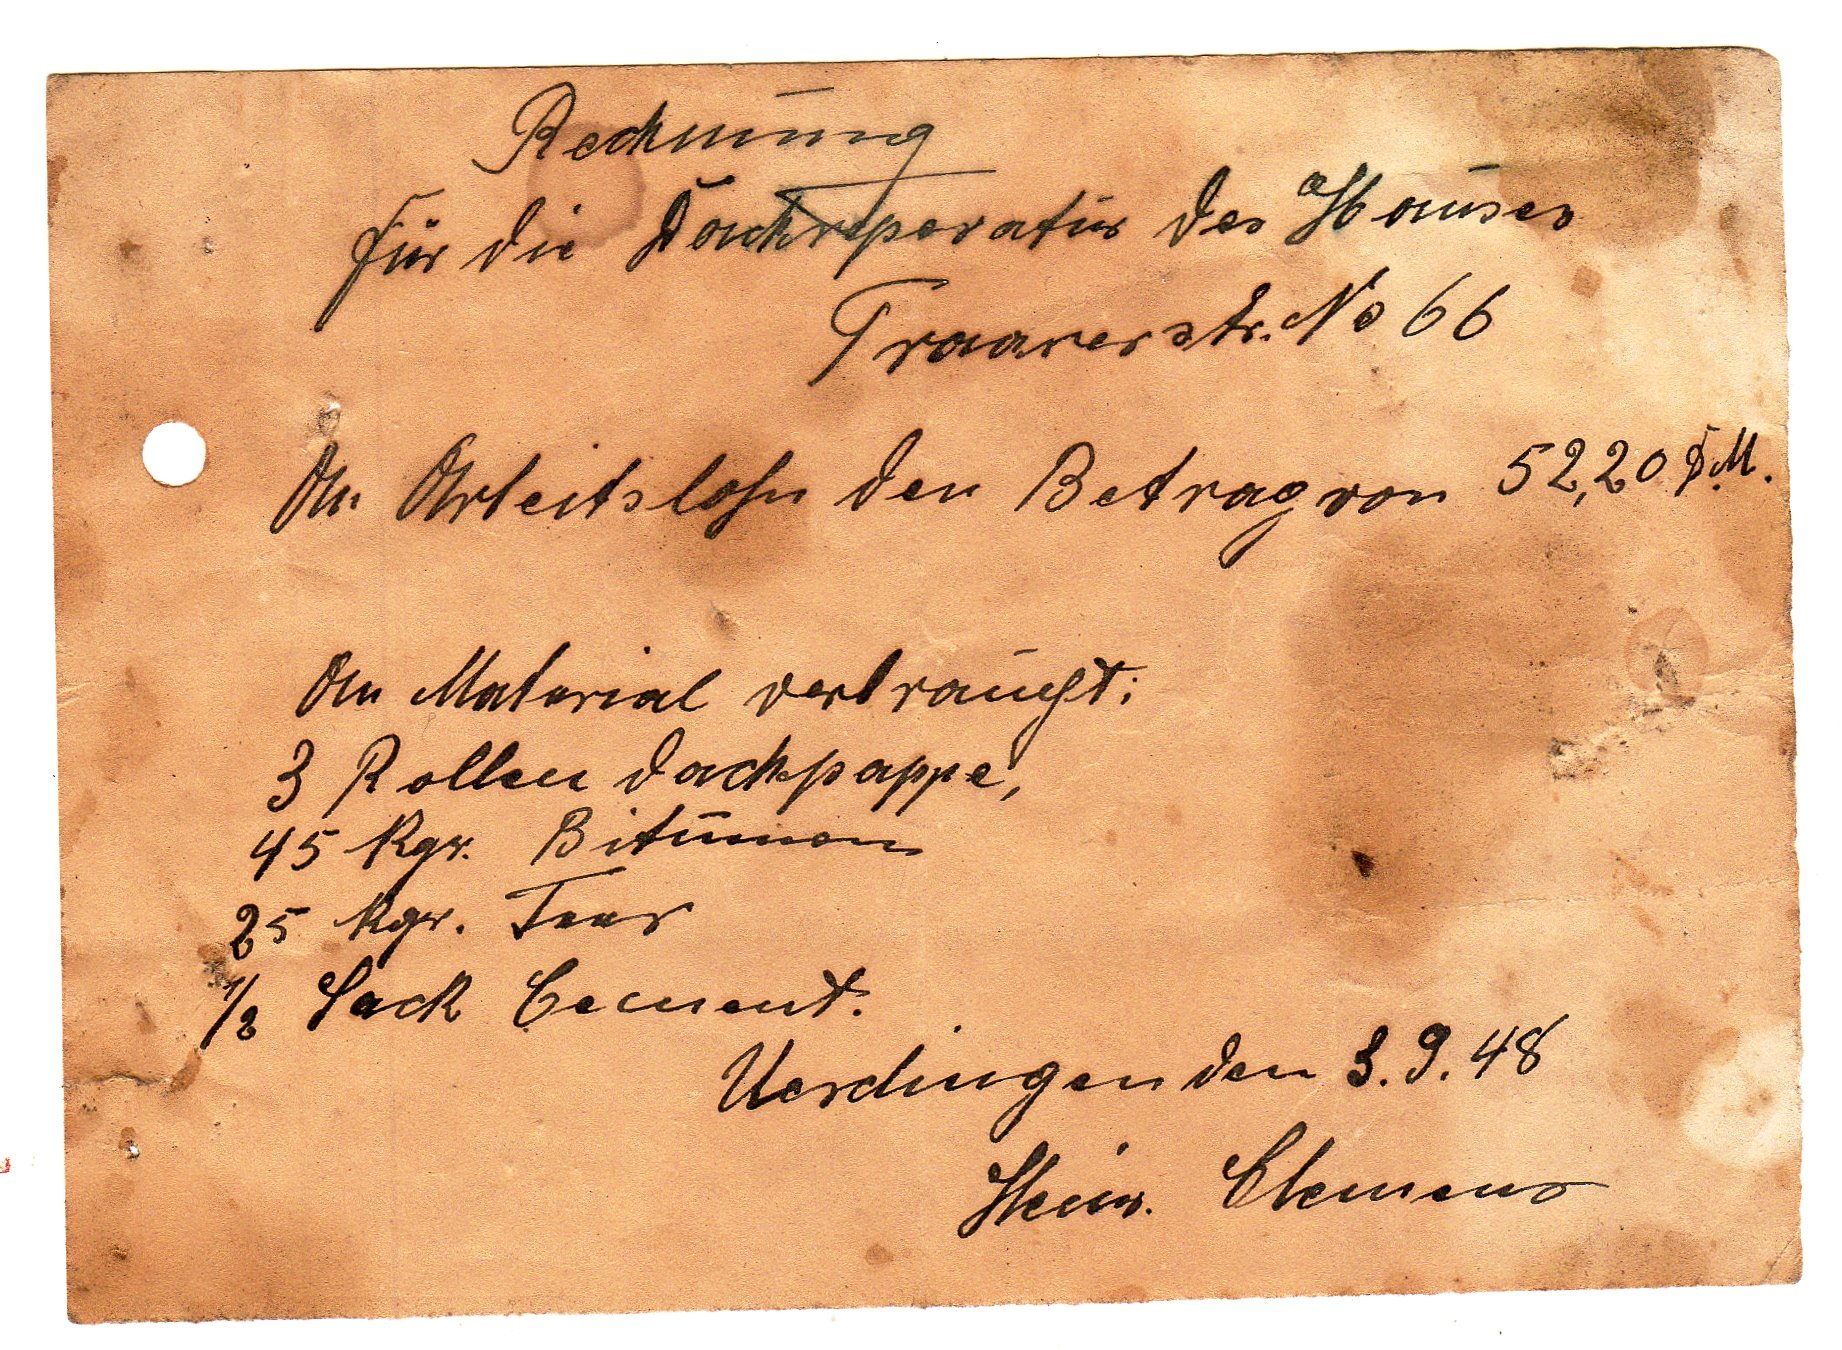 Formlose Handwerkerrechnung vom 03.09.1948 auf Papier mit Tintenstift geschrieben (Heimatarchiv Bad Bodendorf CC BY-NC-SA)